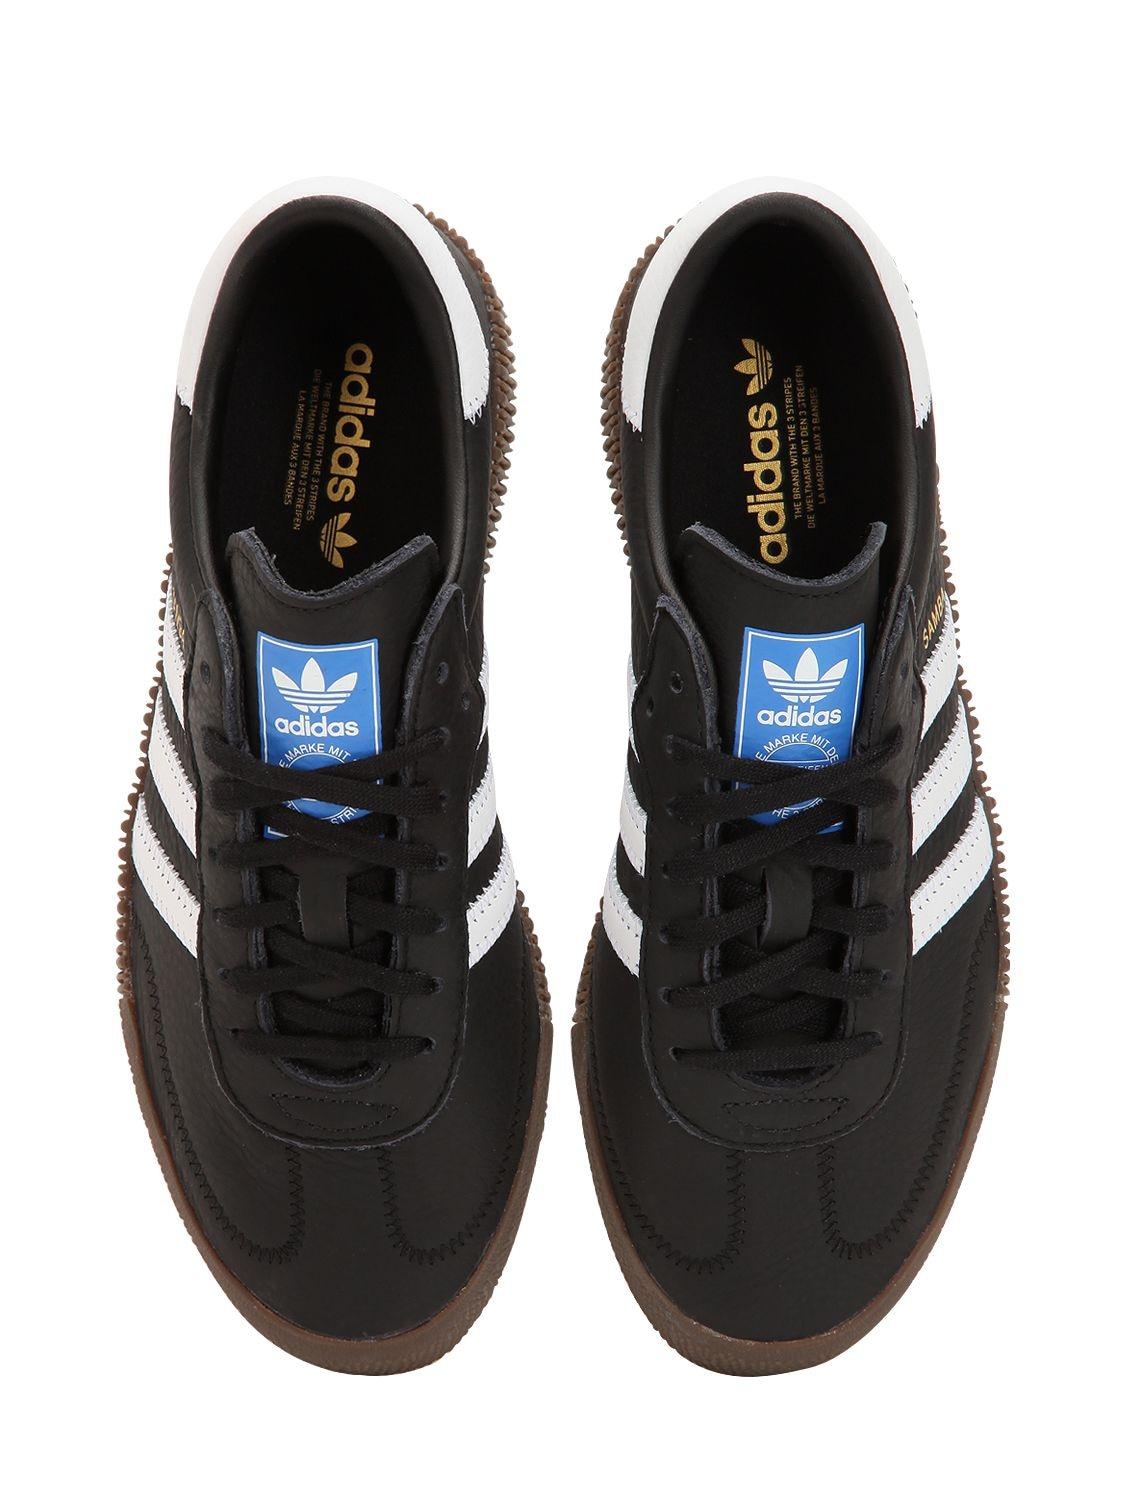 Sneakers "Samba" Con adidas Originals de color Negro | Lyst